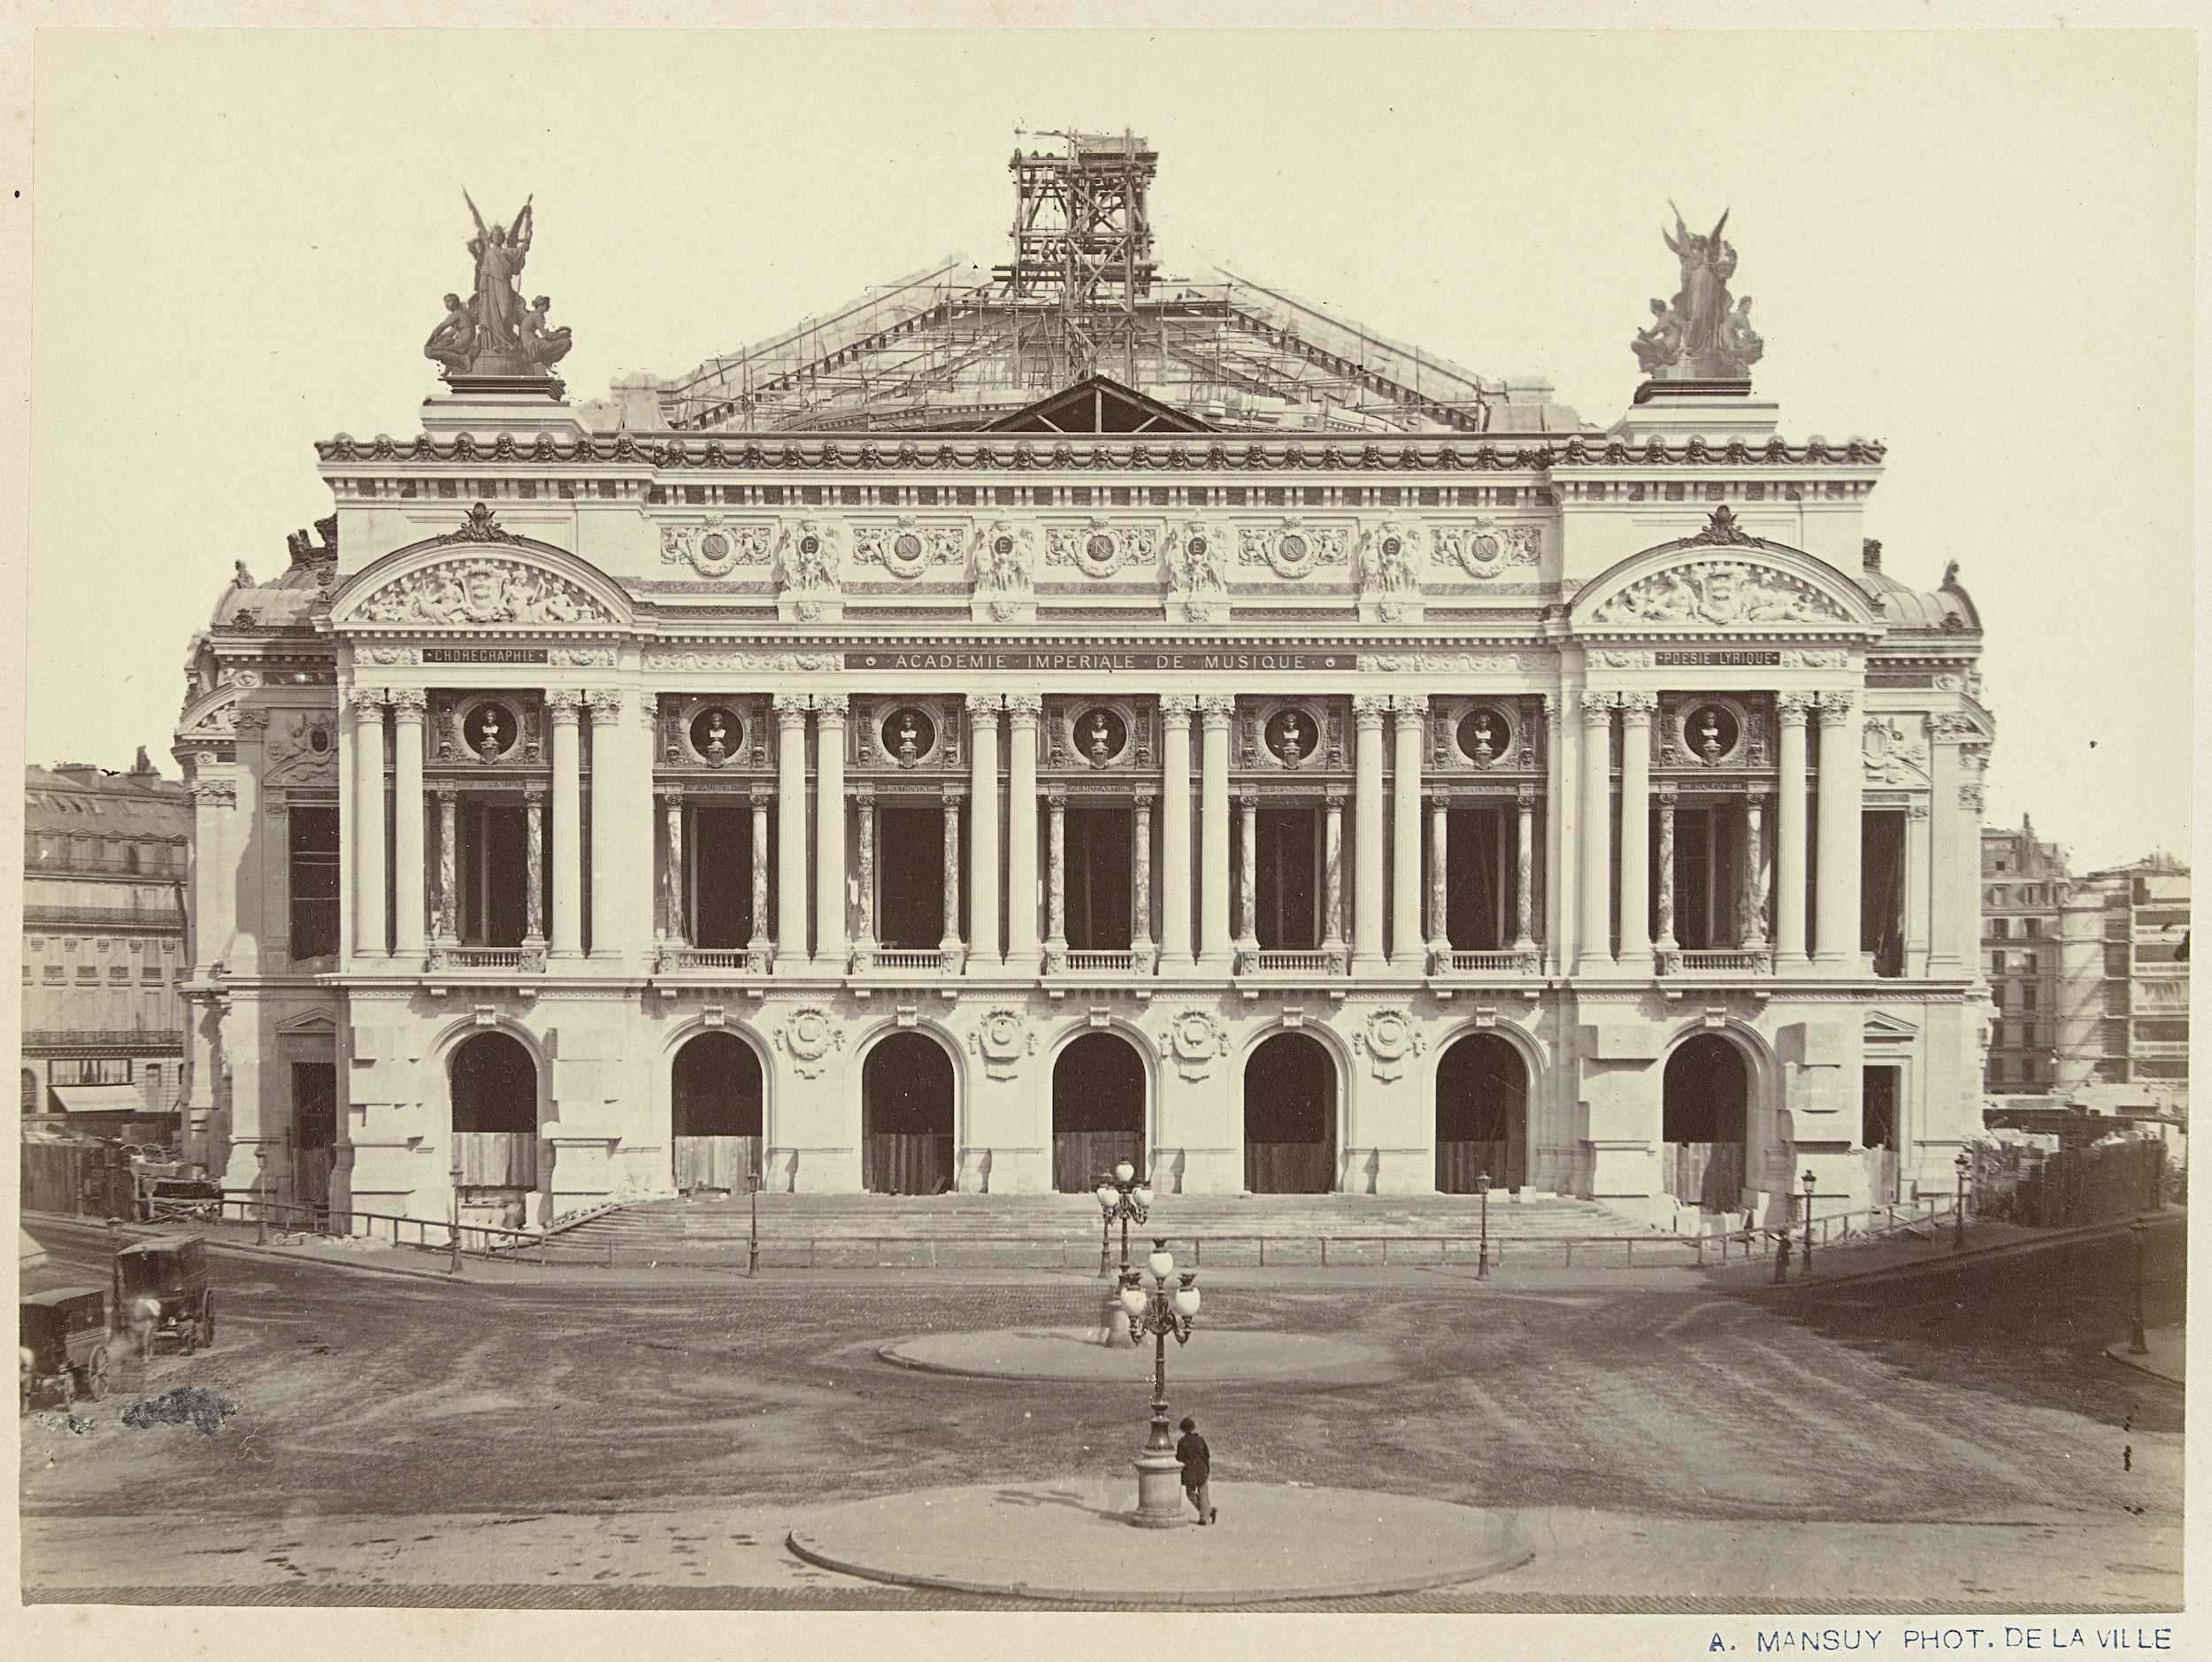 De Nouvel Opéra here Paris